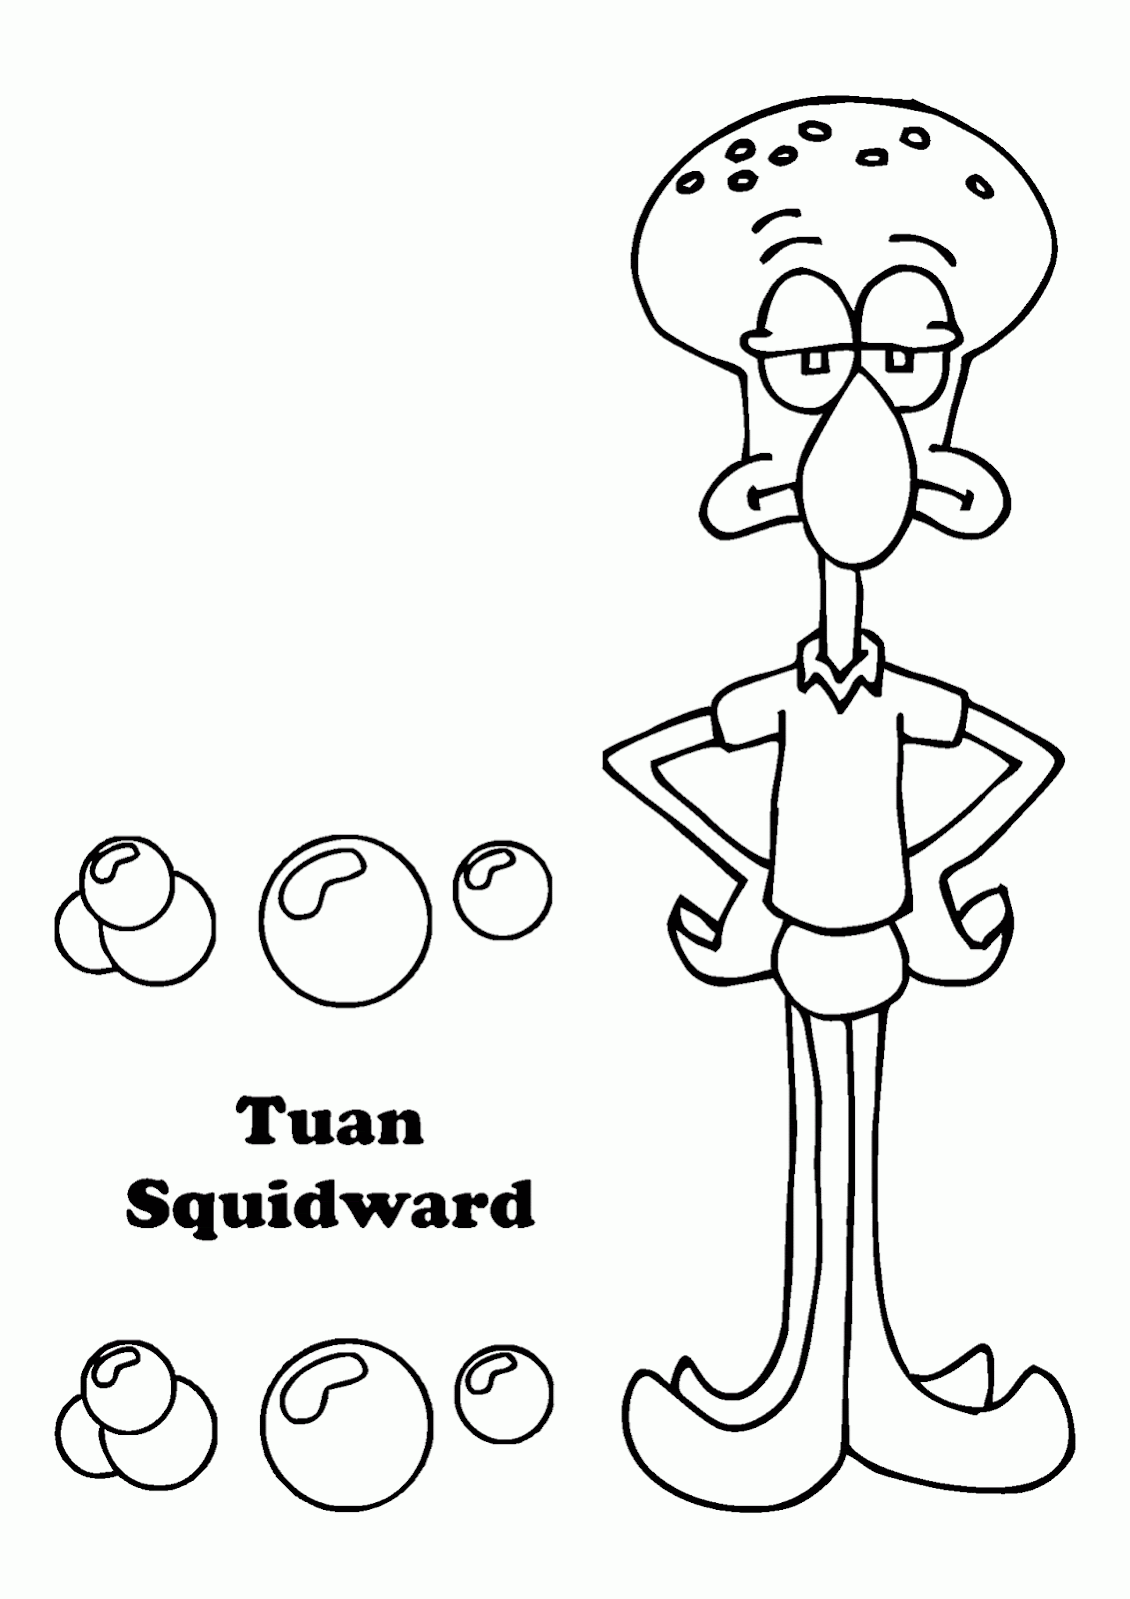  Mewarnai Gambar Squidward SpongeBob SquarePants 